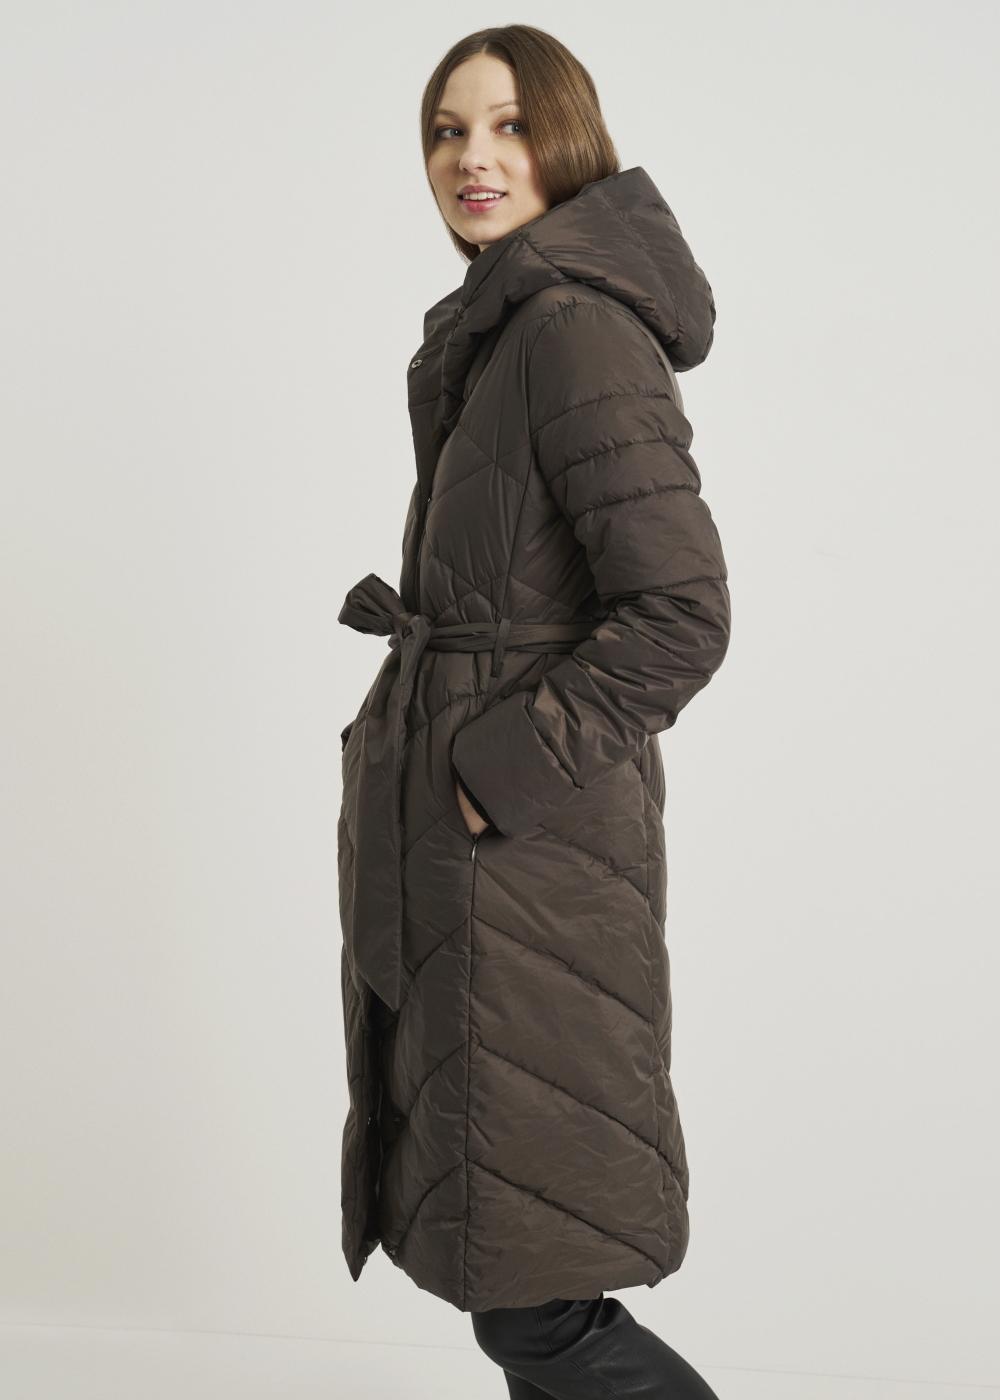 Brązowa kurtka damska z pikowaniem KURDT-0374-57(Z21)